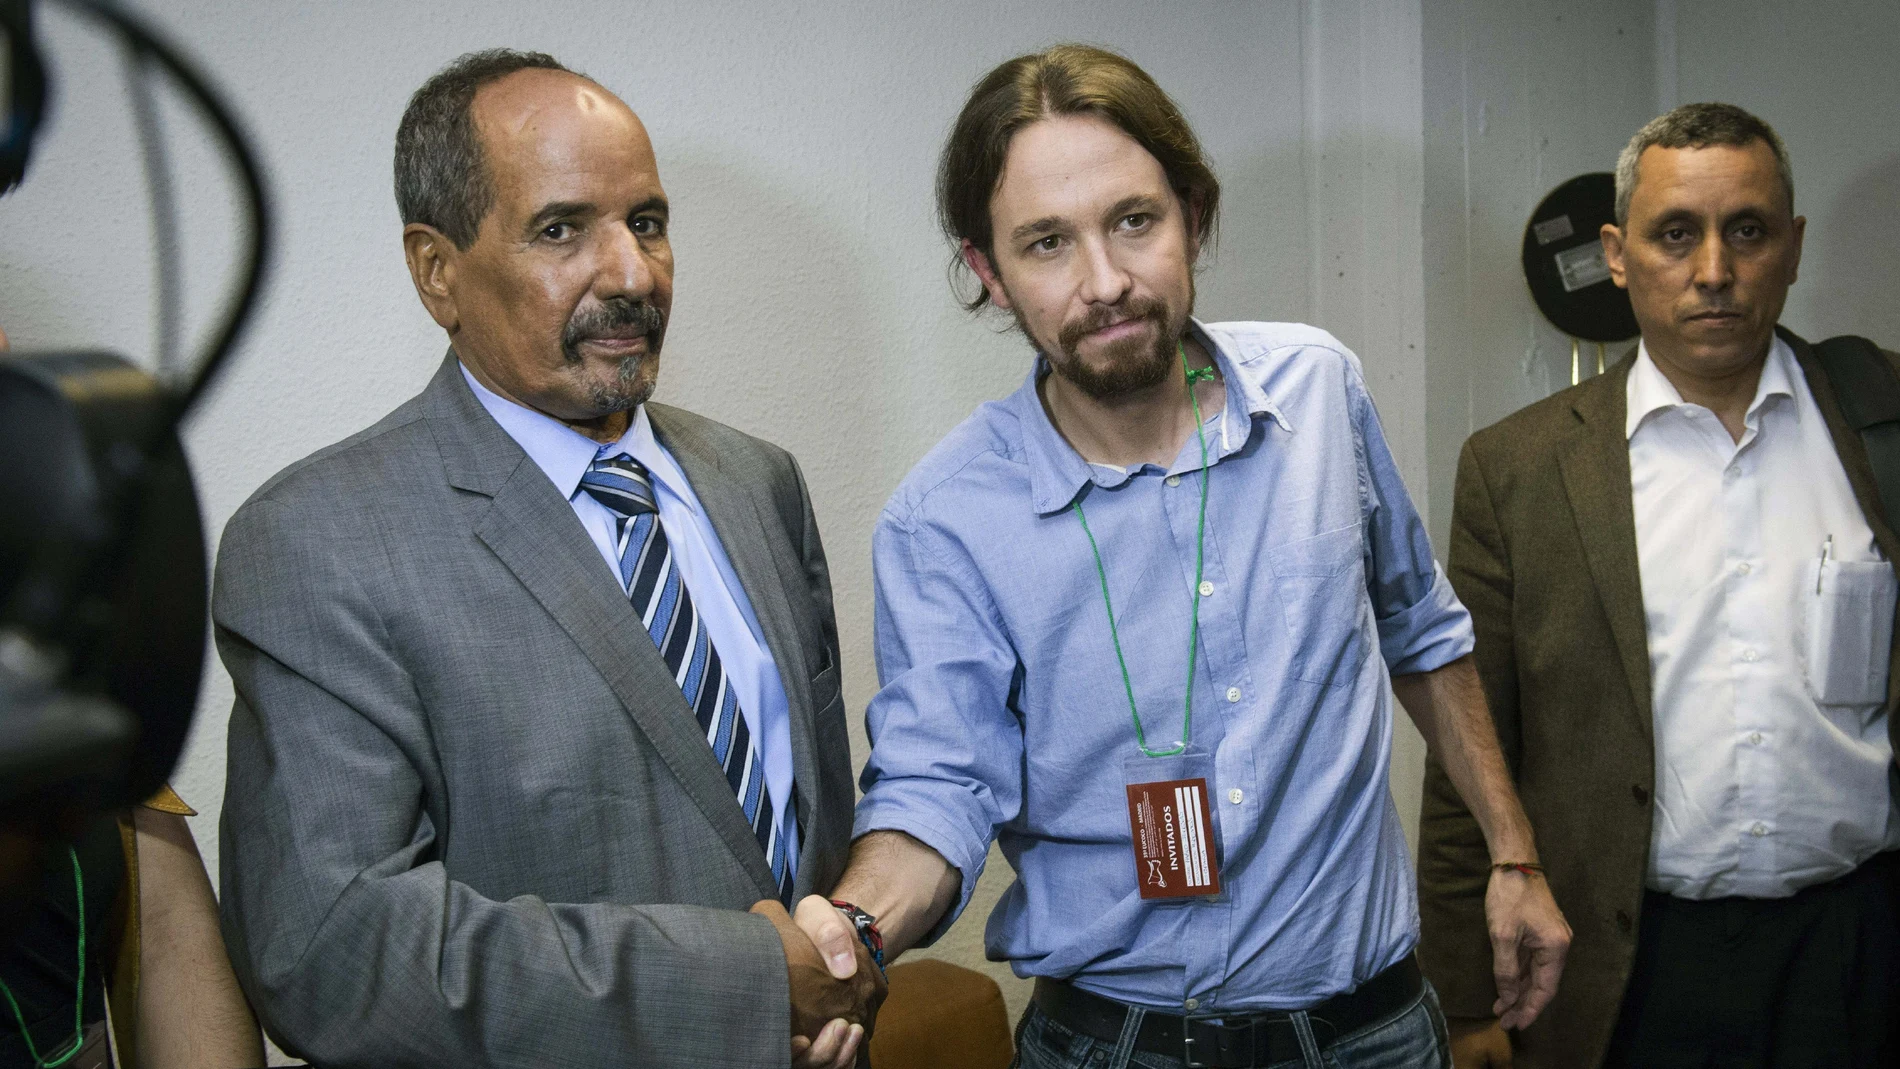 El presidente de la República Árabe Saharaui Democrática (RASD) y secretario general del Frente Polisario, Mohamed Abdelaziz (i), saluda al líder de Podemos, Pablo Iglesias, en Madrid.